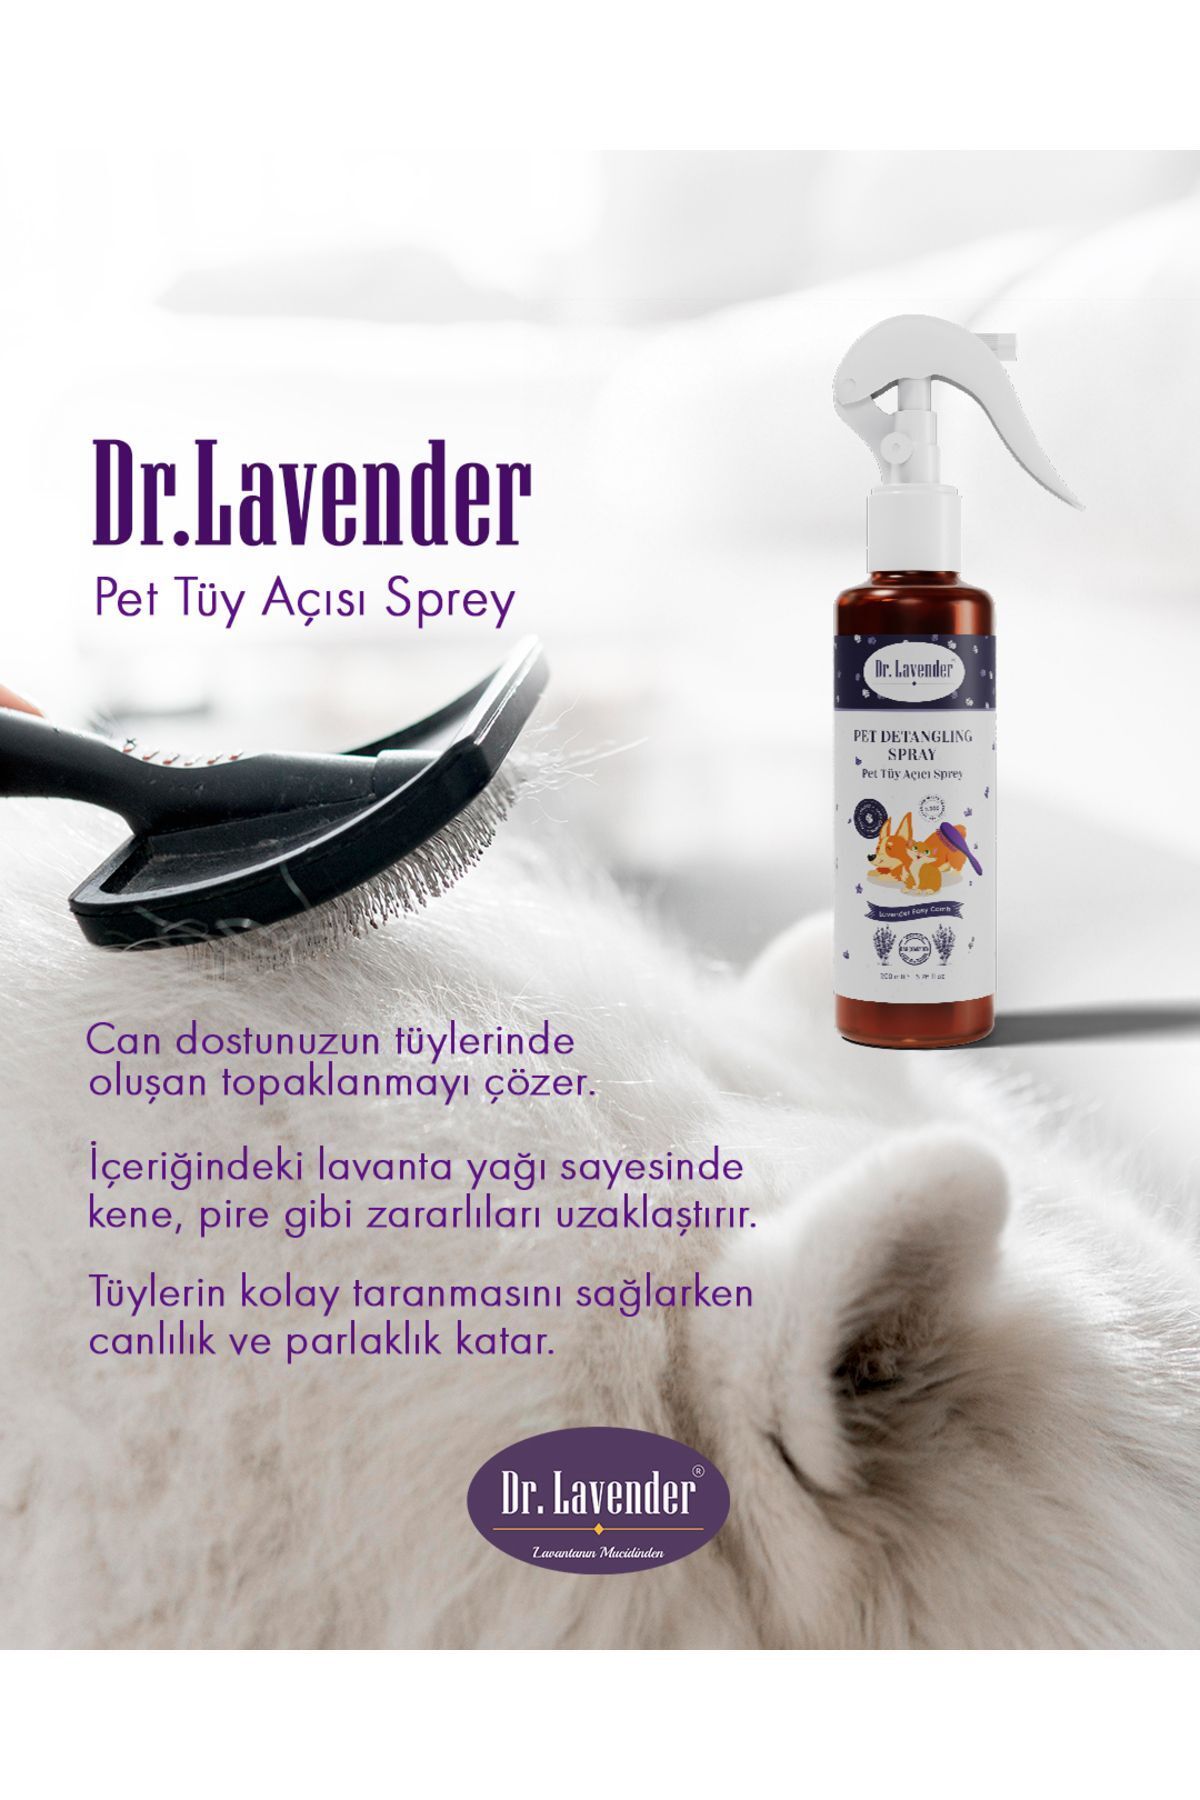 Dr. Lavender Lavantalı Pet Tüy Açıcı Kene Ve Pire Önleyici Kolay Taranma Ve Tüy Bakım Spreyi